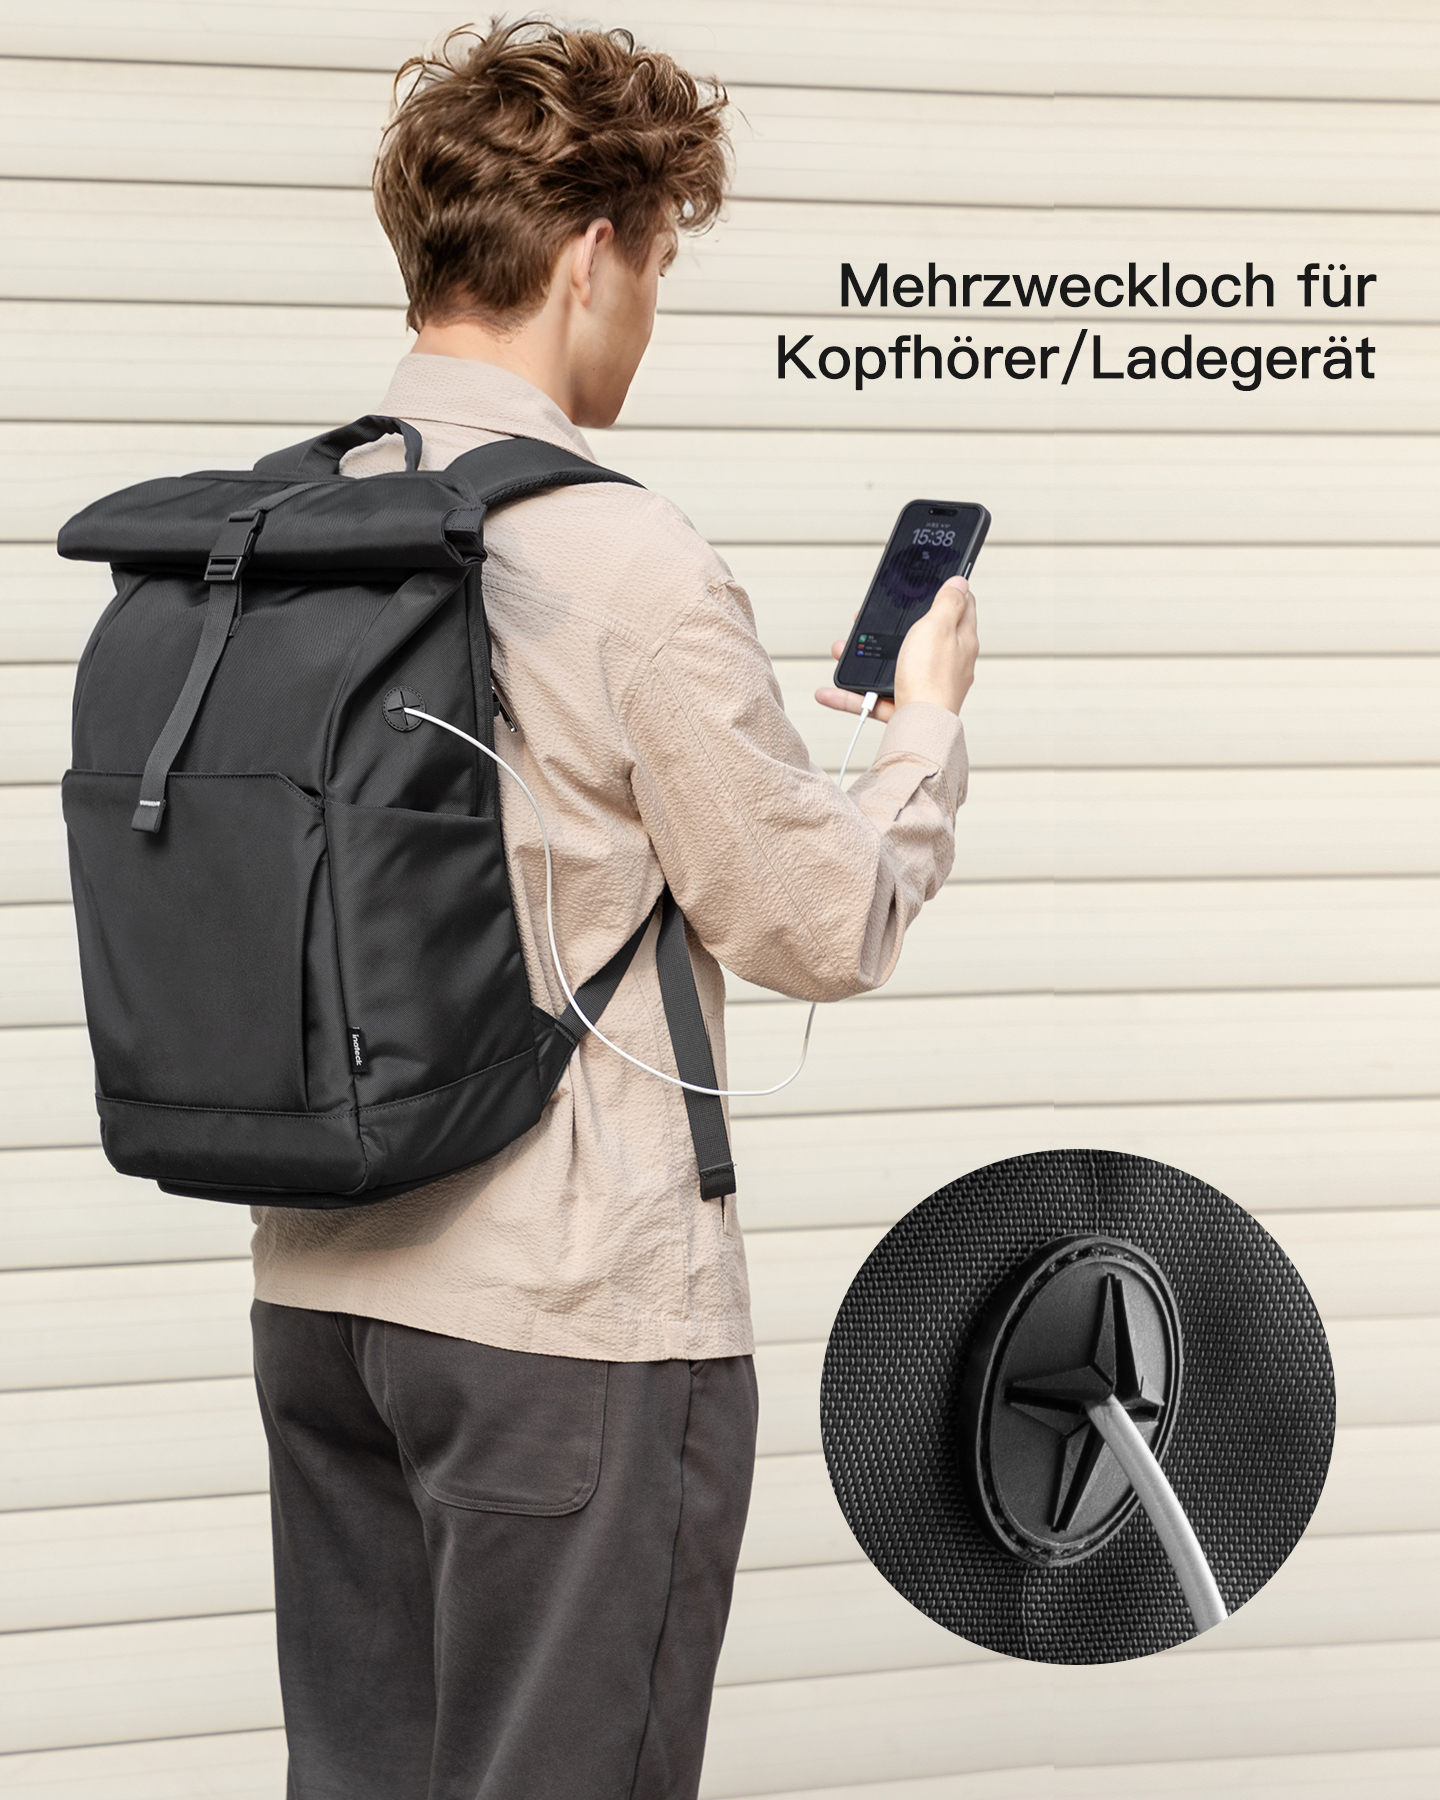 Schuhfach Rucksack 30L BP01007_black Unisex, separatem für Uni/Pendeln/Freizeit/Arbeit/Sport/Reisen mit black, INATECK